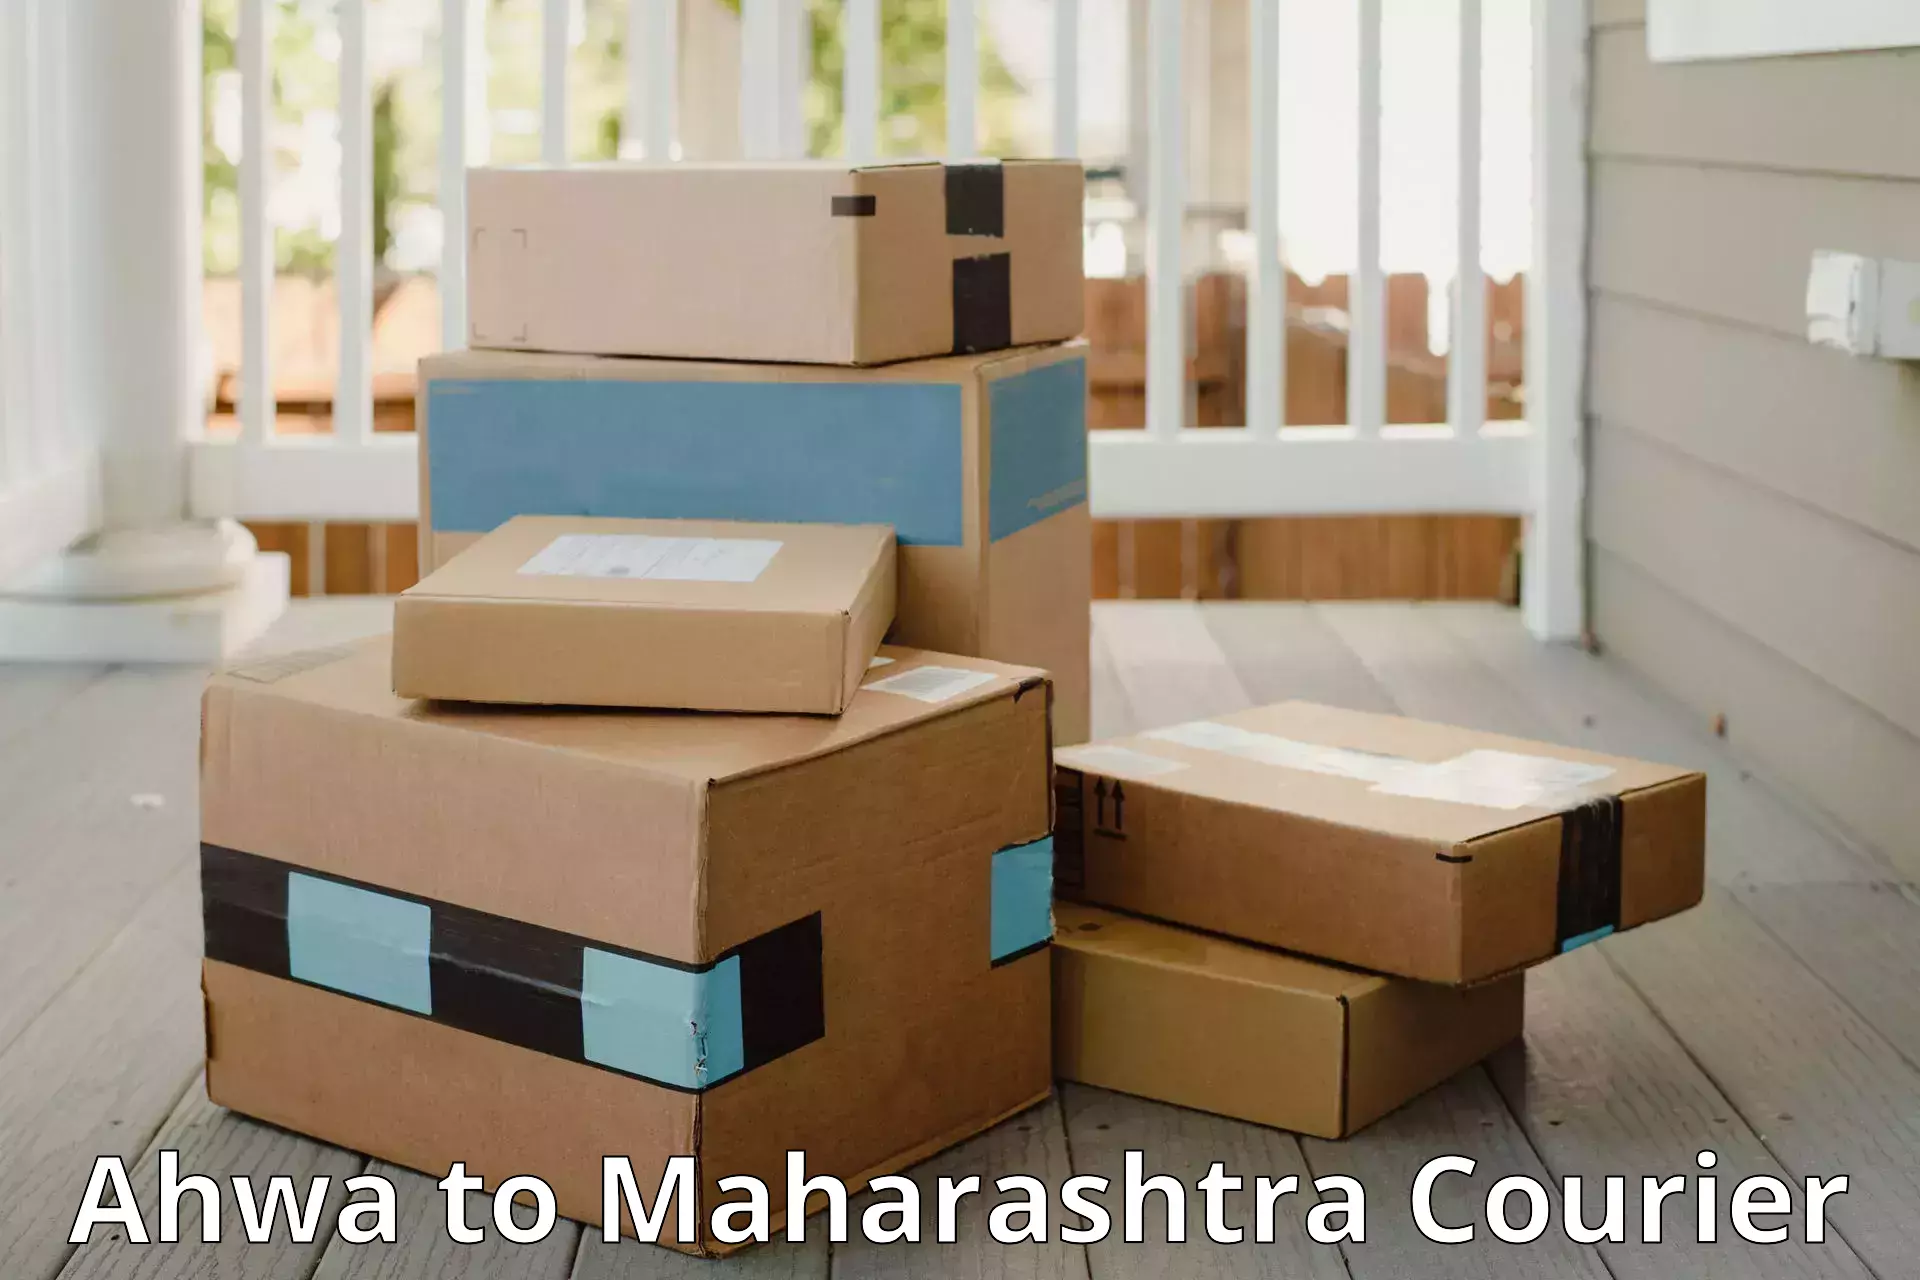 Baggage shipping service Ahwa to Maharashtra